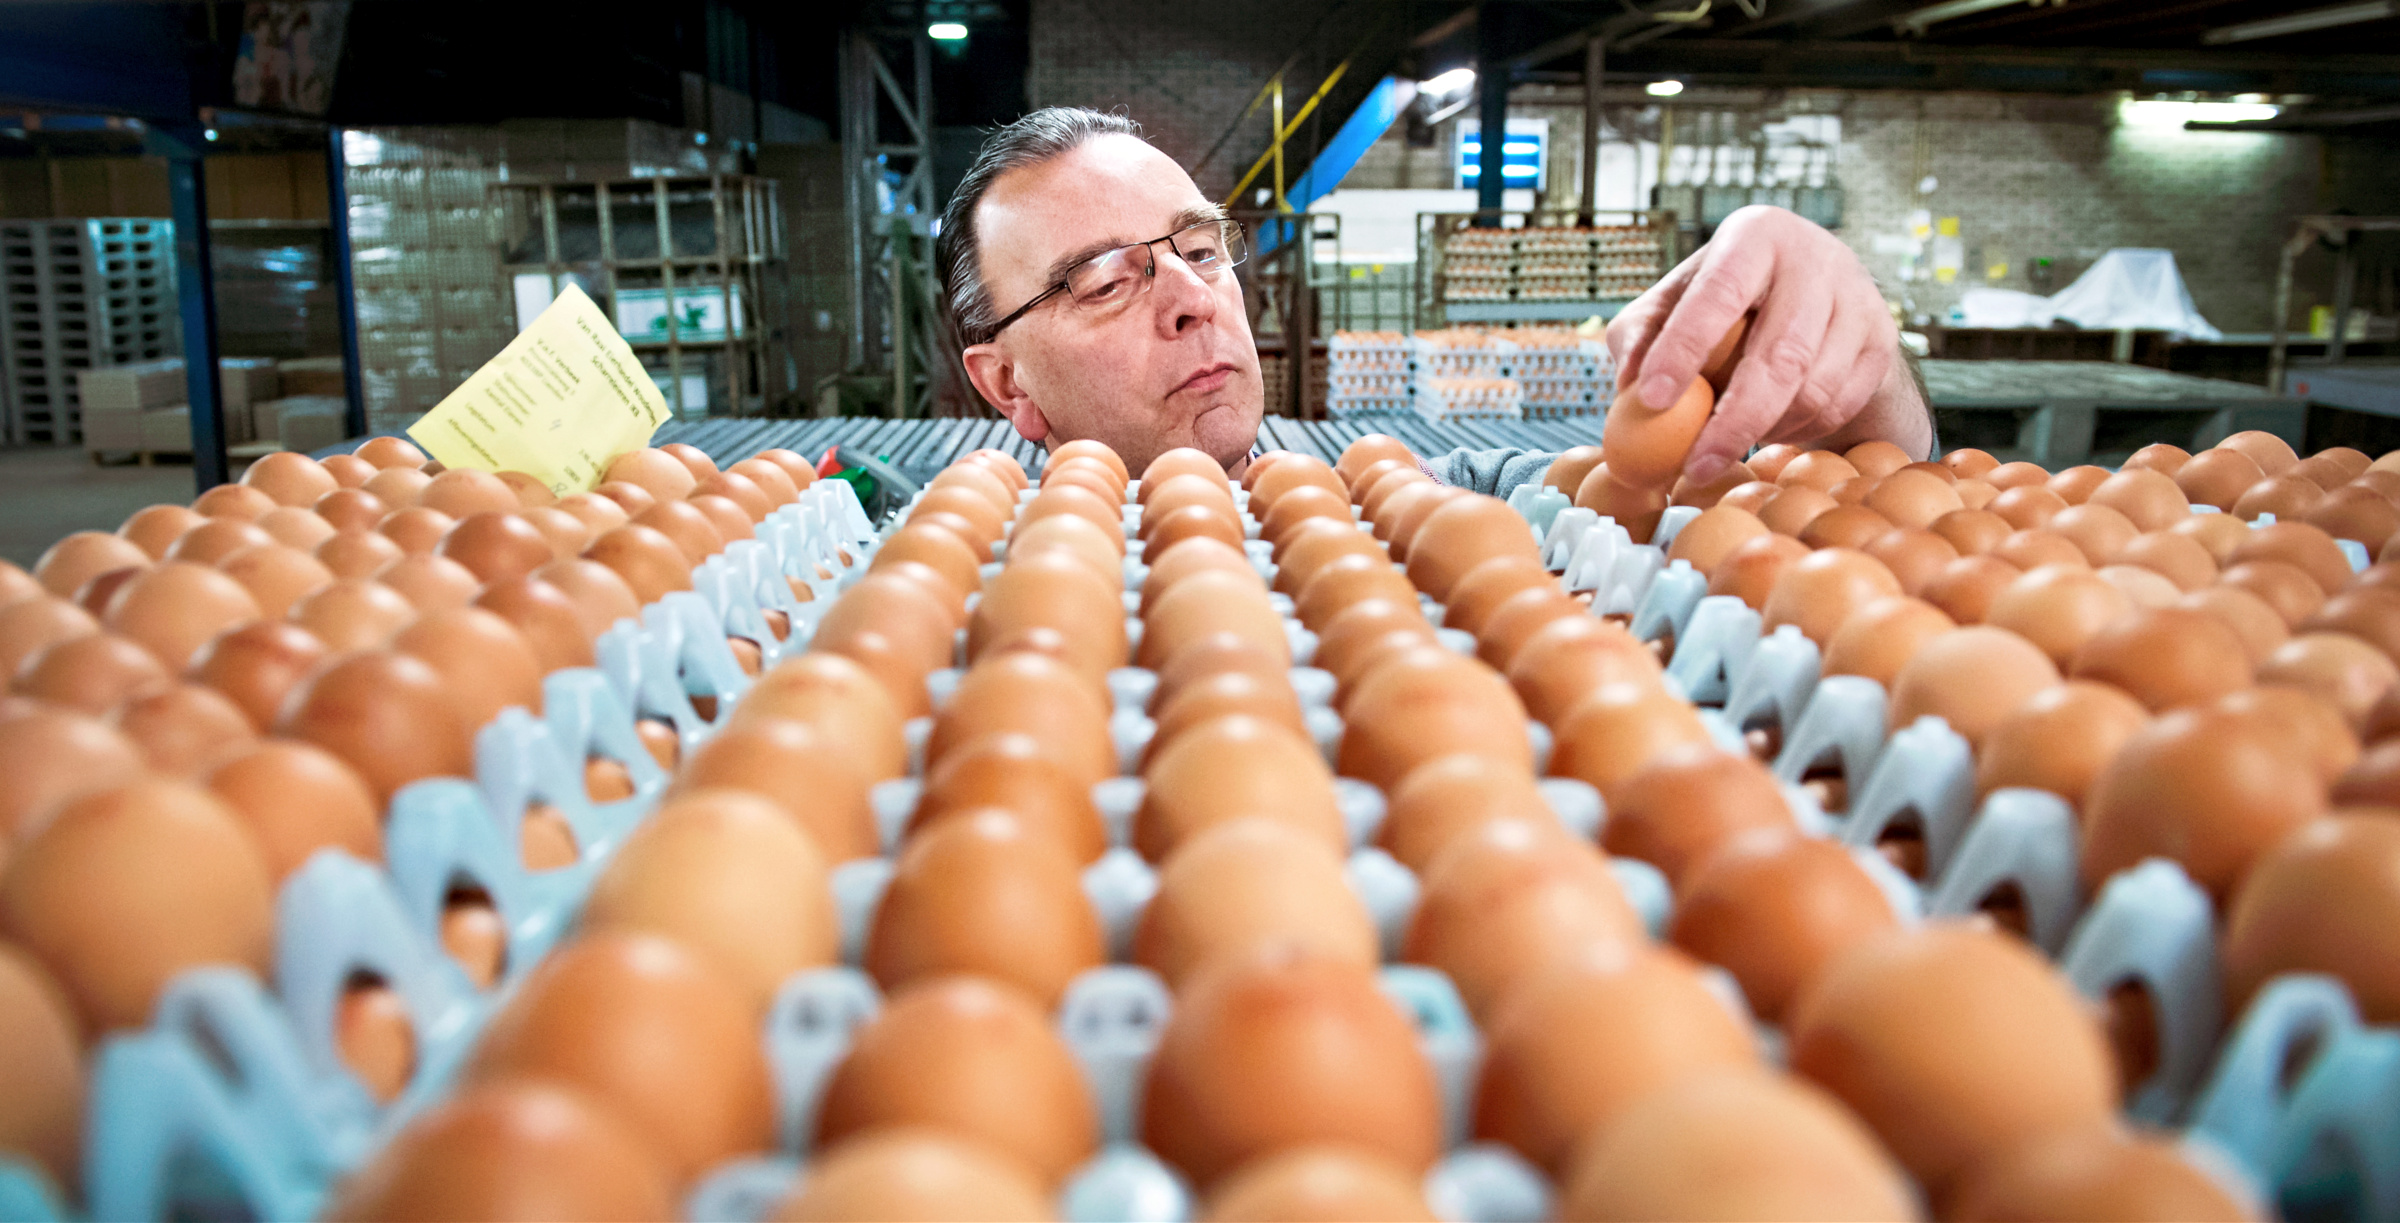 Kalmte berekenen wol Voor bruine eieren betaal je meer dan voor witte eieren, maar waarom?